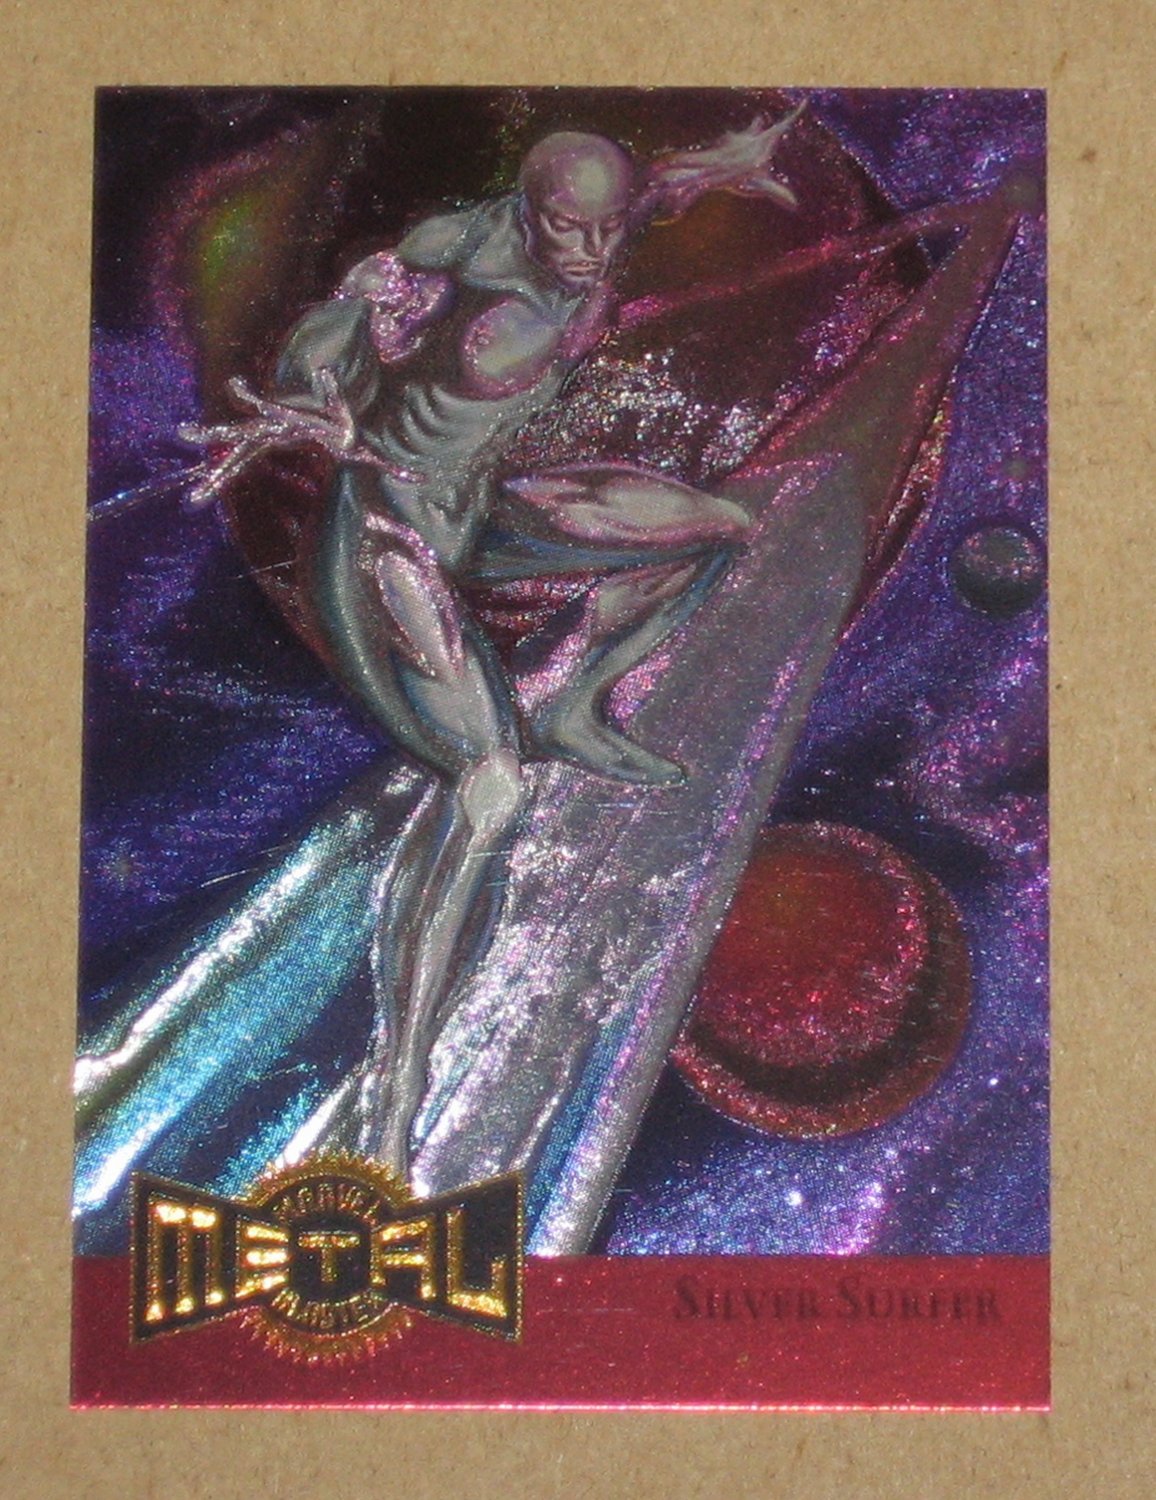 Marvel Metal (Fleer 1995) Metal Blaster Card 11 Silver